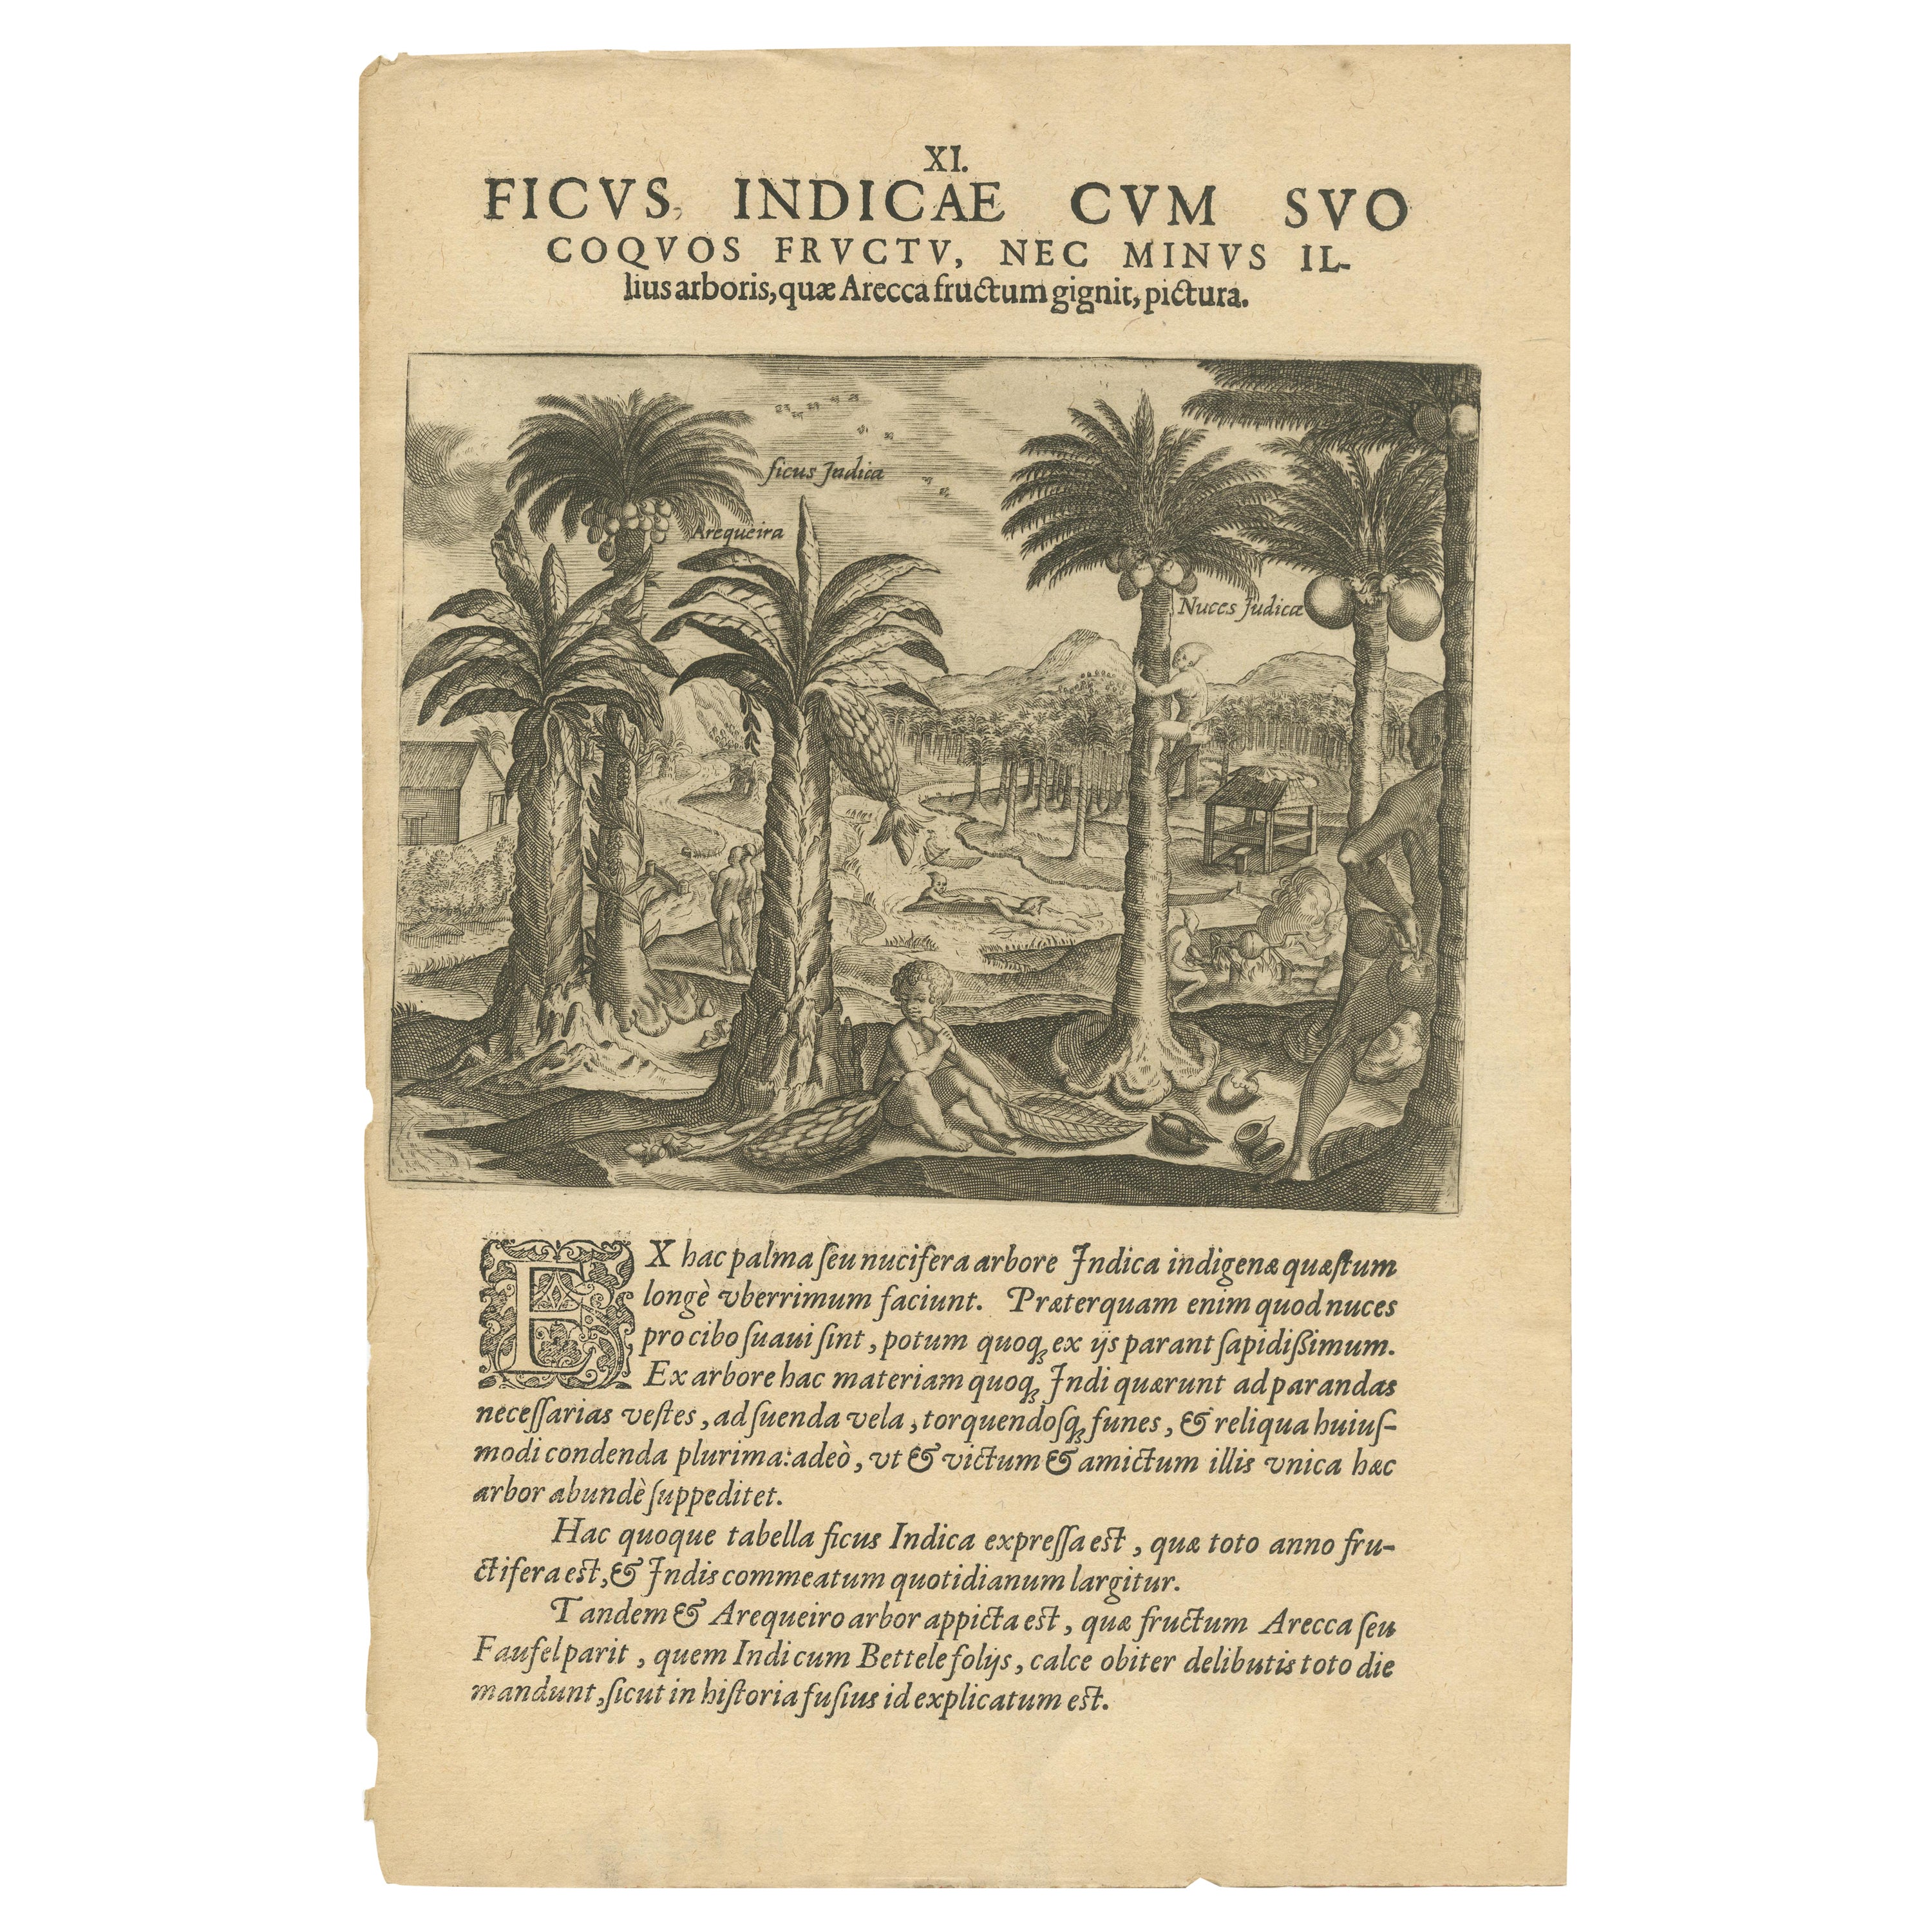 Délicieux tropicaux : Illustration de De Bry de fléchettes et de noix d'Inde, 1601